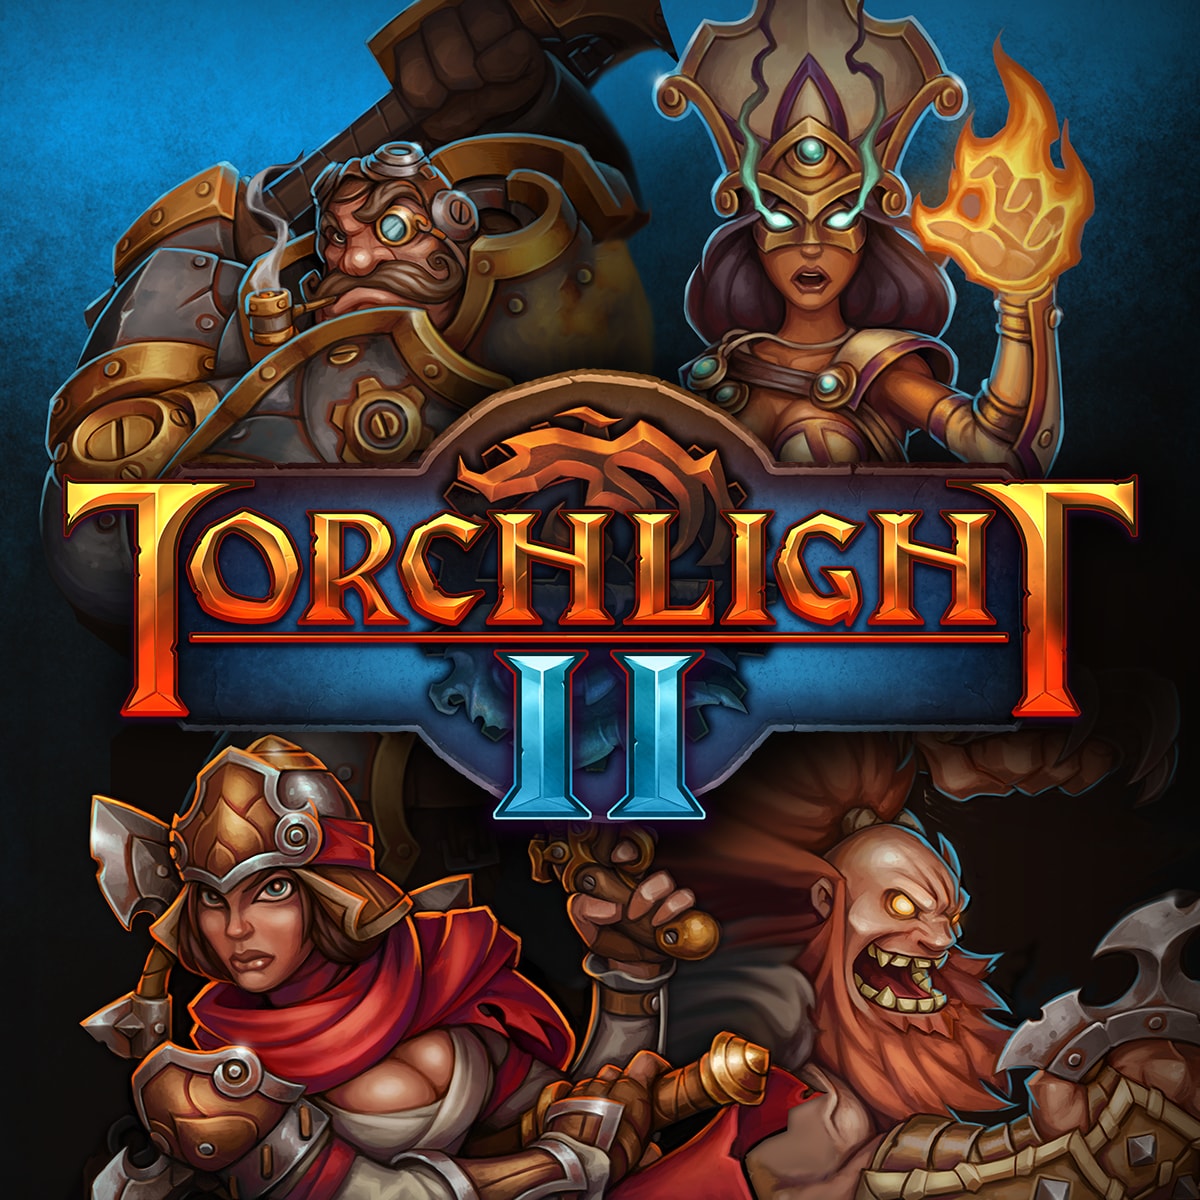 www.torchlight2.com